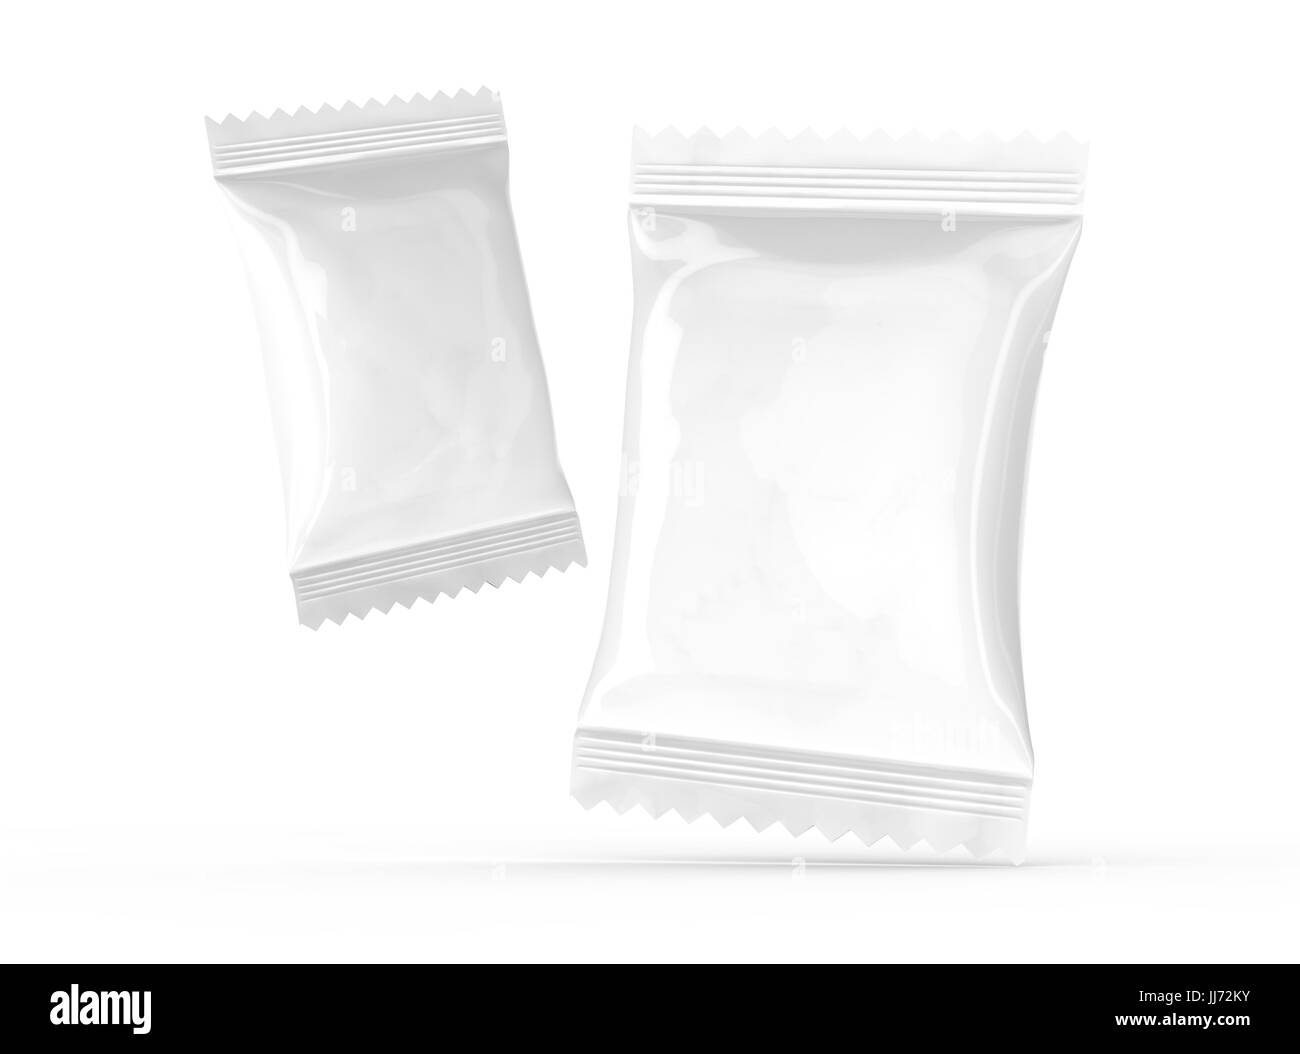 Cracker Paketvorlage nutzt leer essen Folie Mockup für Design in 3D-Rendering, zwei Packungen Stockfoto